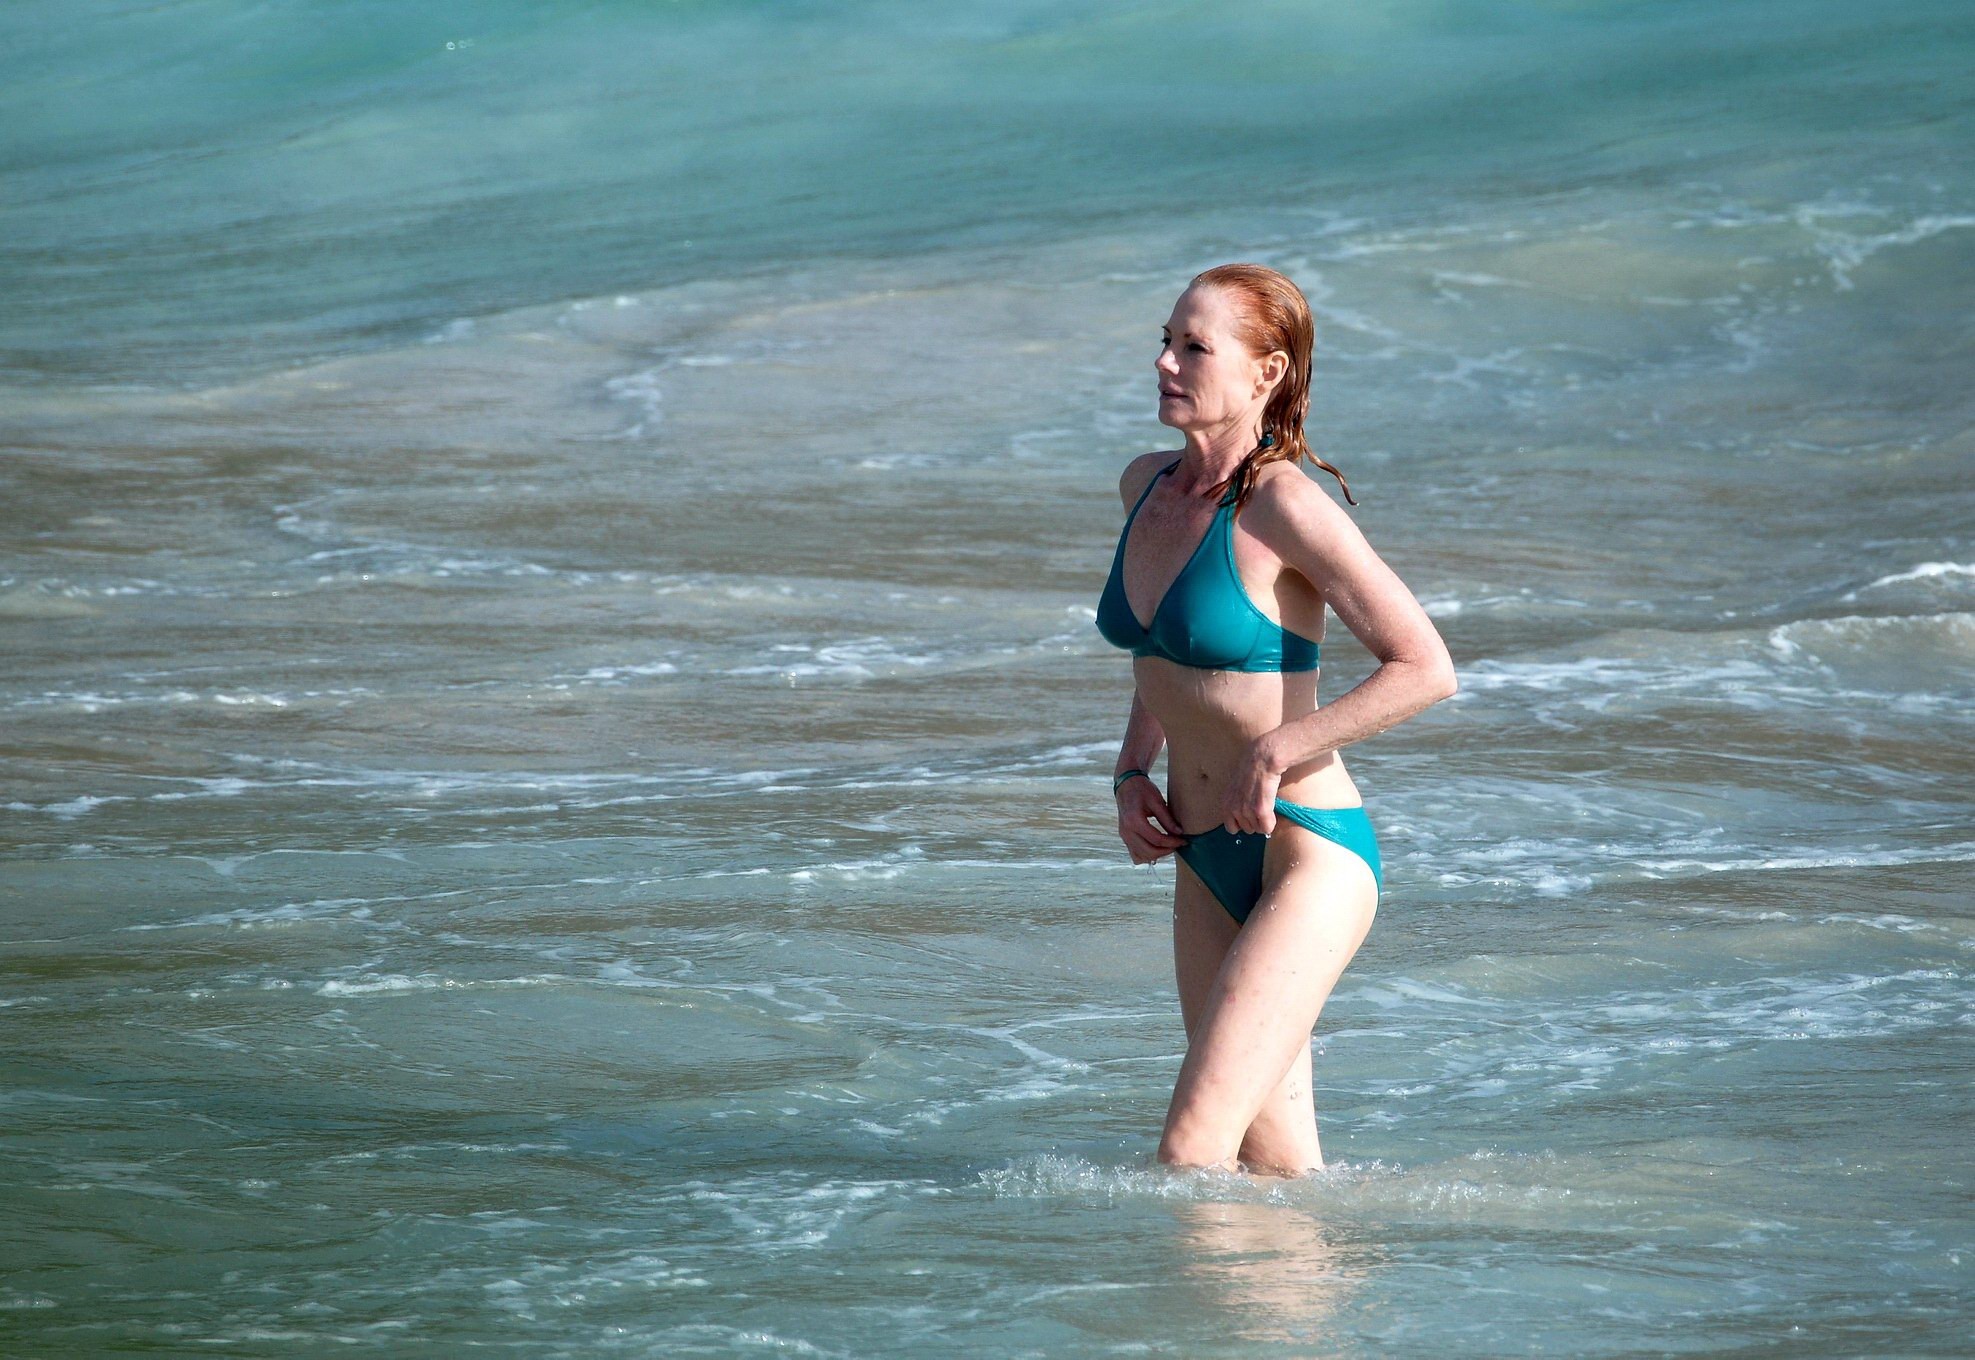 Marg helgenberger portant un bikini turquoise sur une plage de st.barts
 #75208463